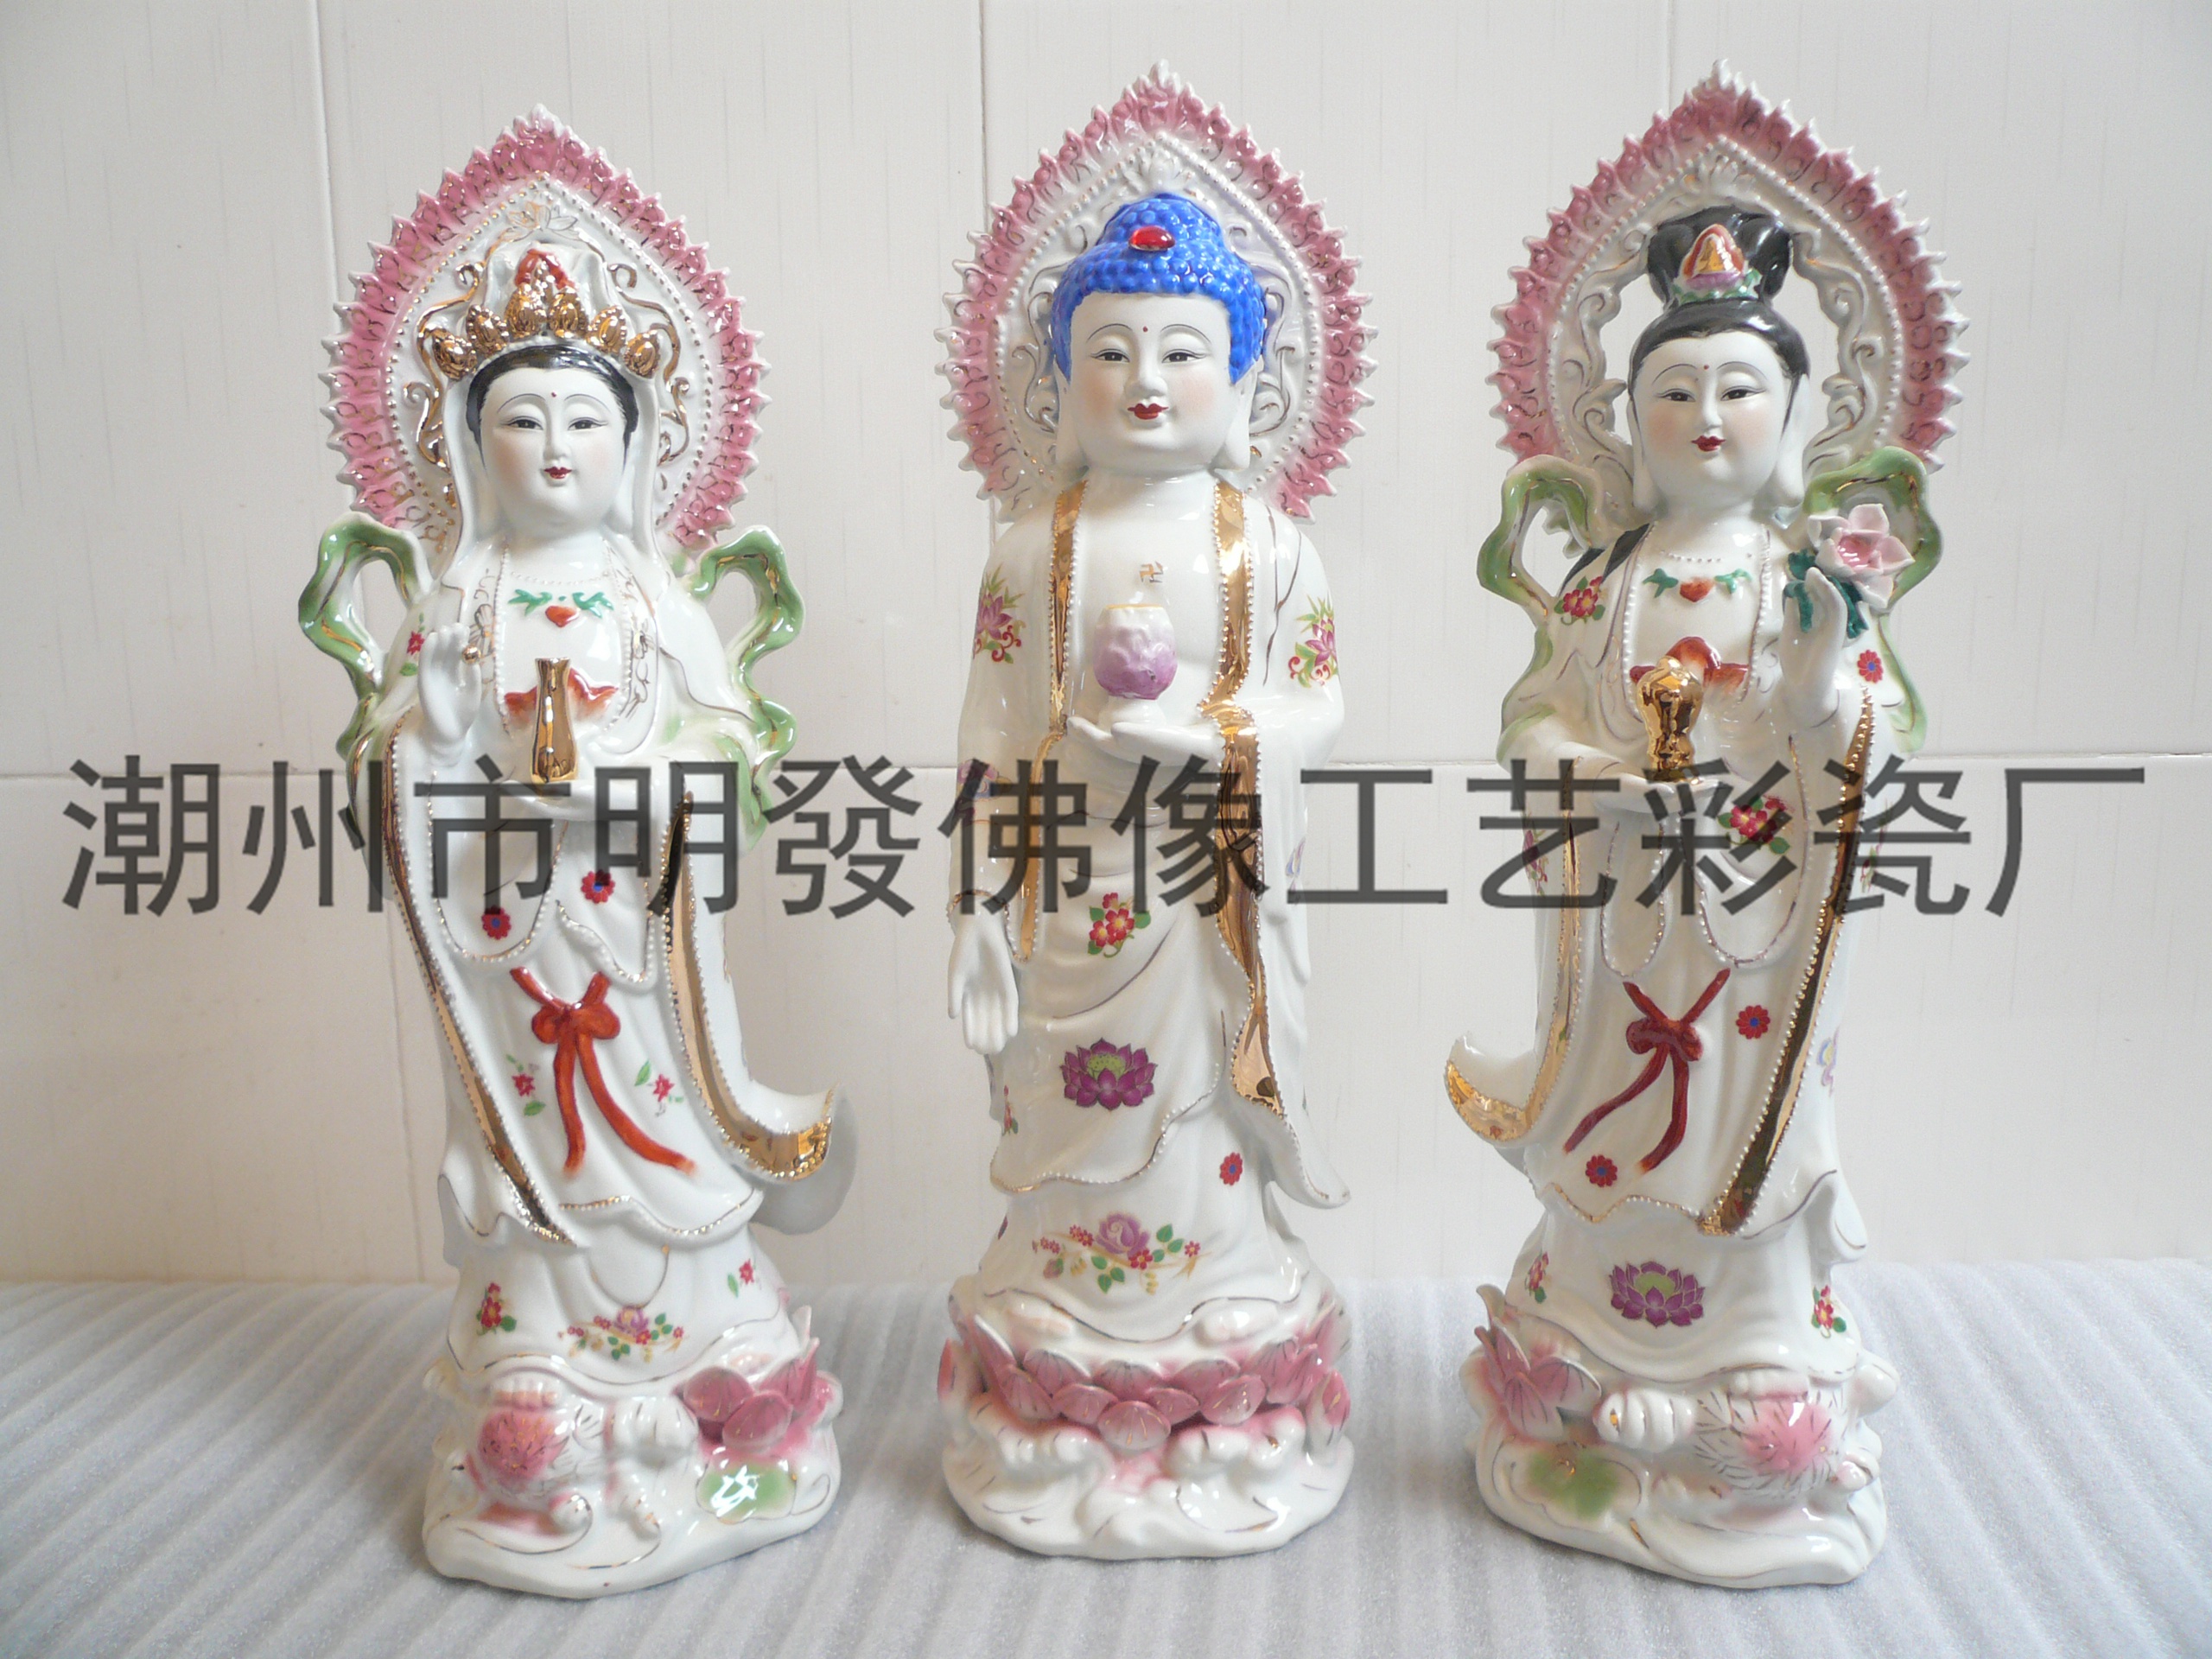 潮州明發工艺陶瓷佛像彩绘西方三圣批发